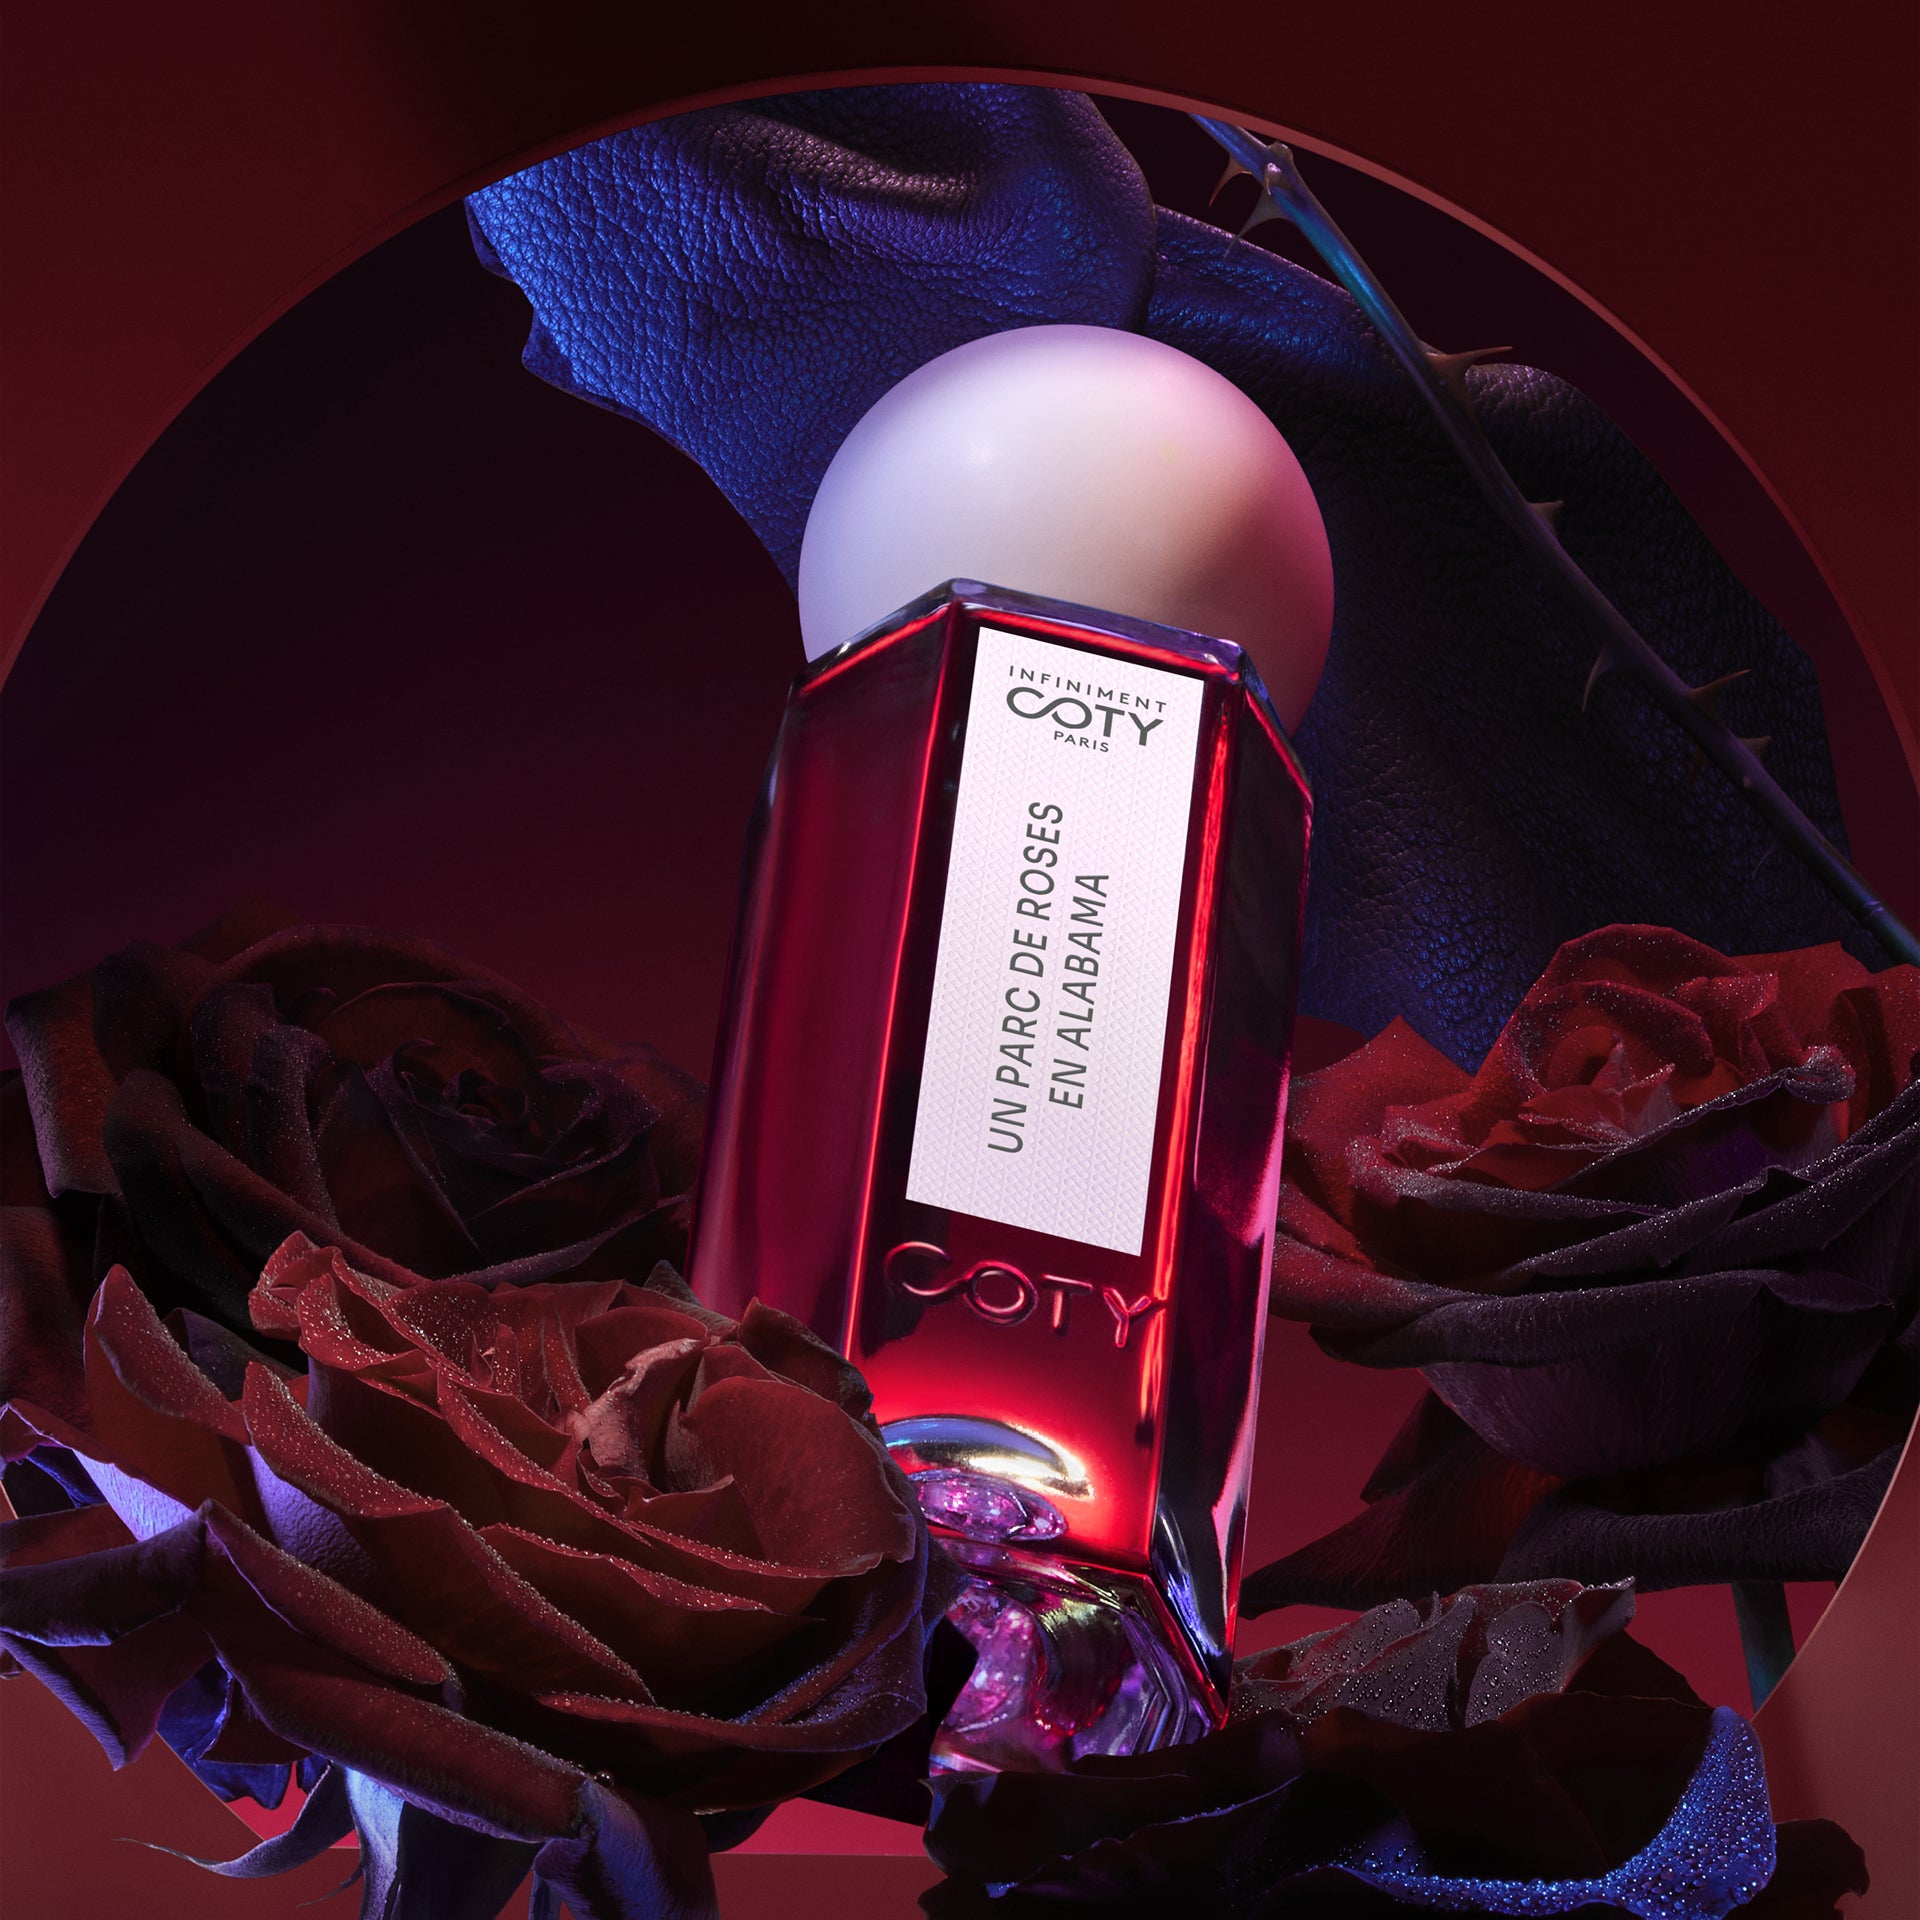 Infiniment Coty Paris | UN PARC DE ROSES EN ALABAMA Perfume